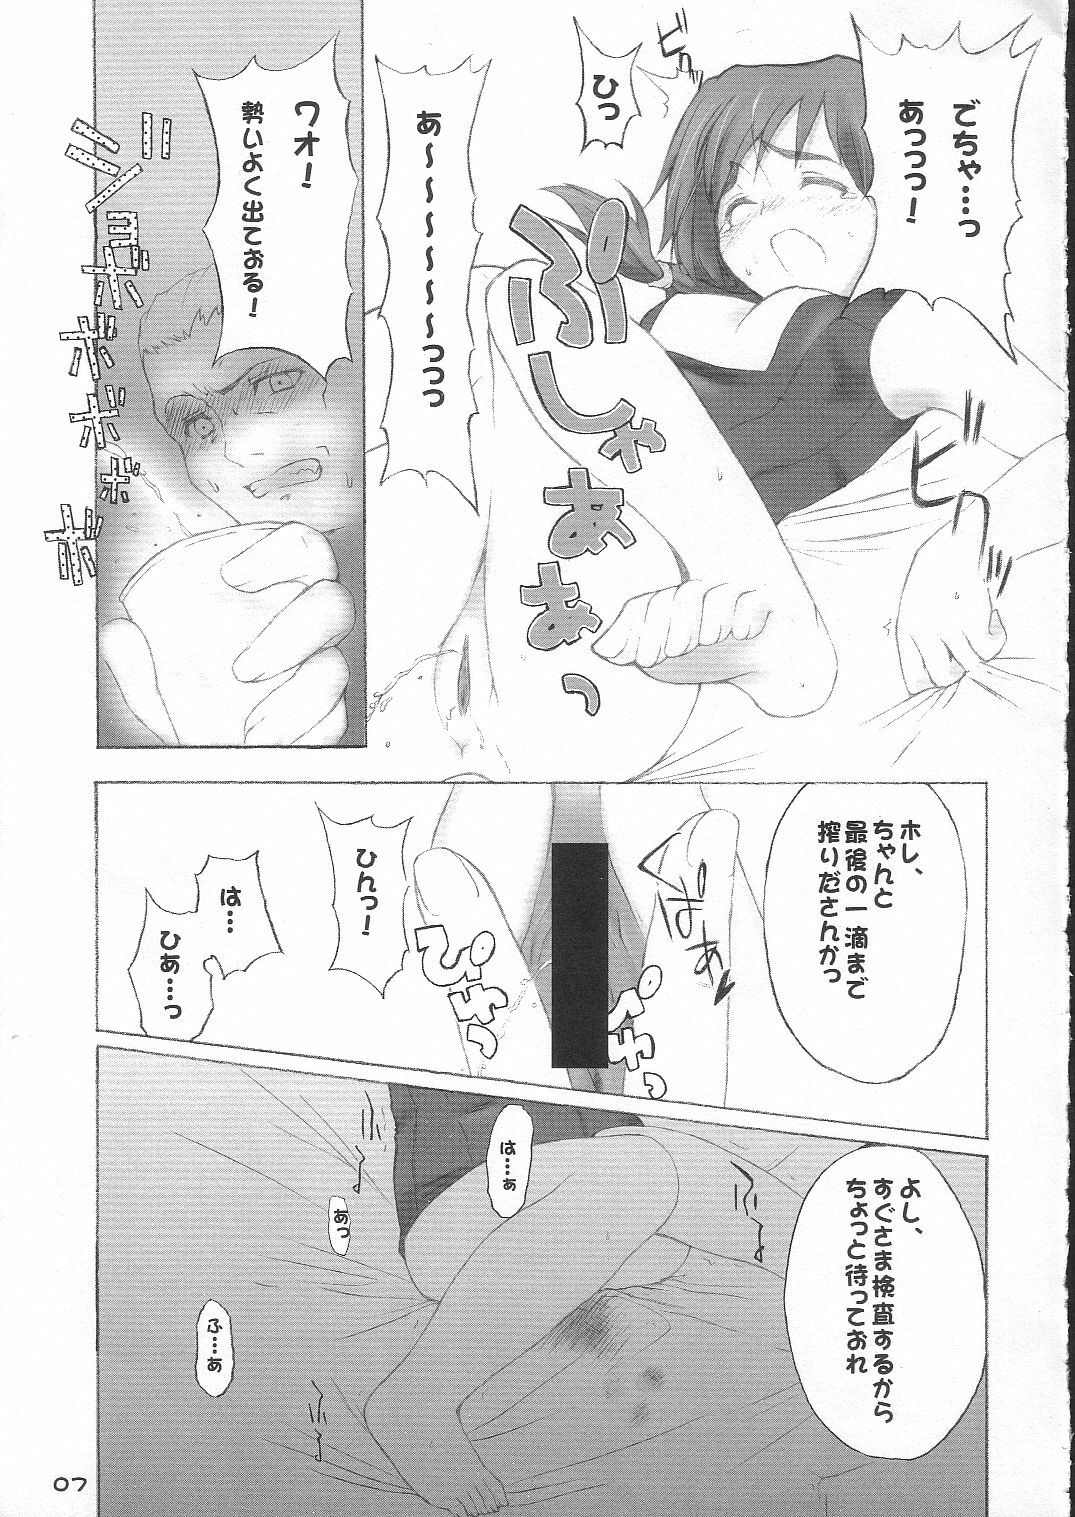 [4T] Ikuno Seikatsu Schmiz (To Heart 2) page 6 full